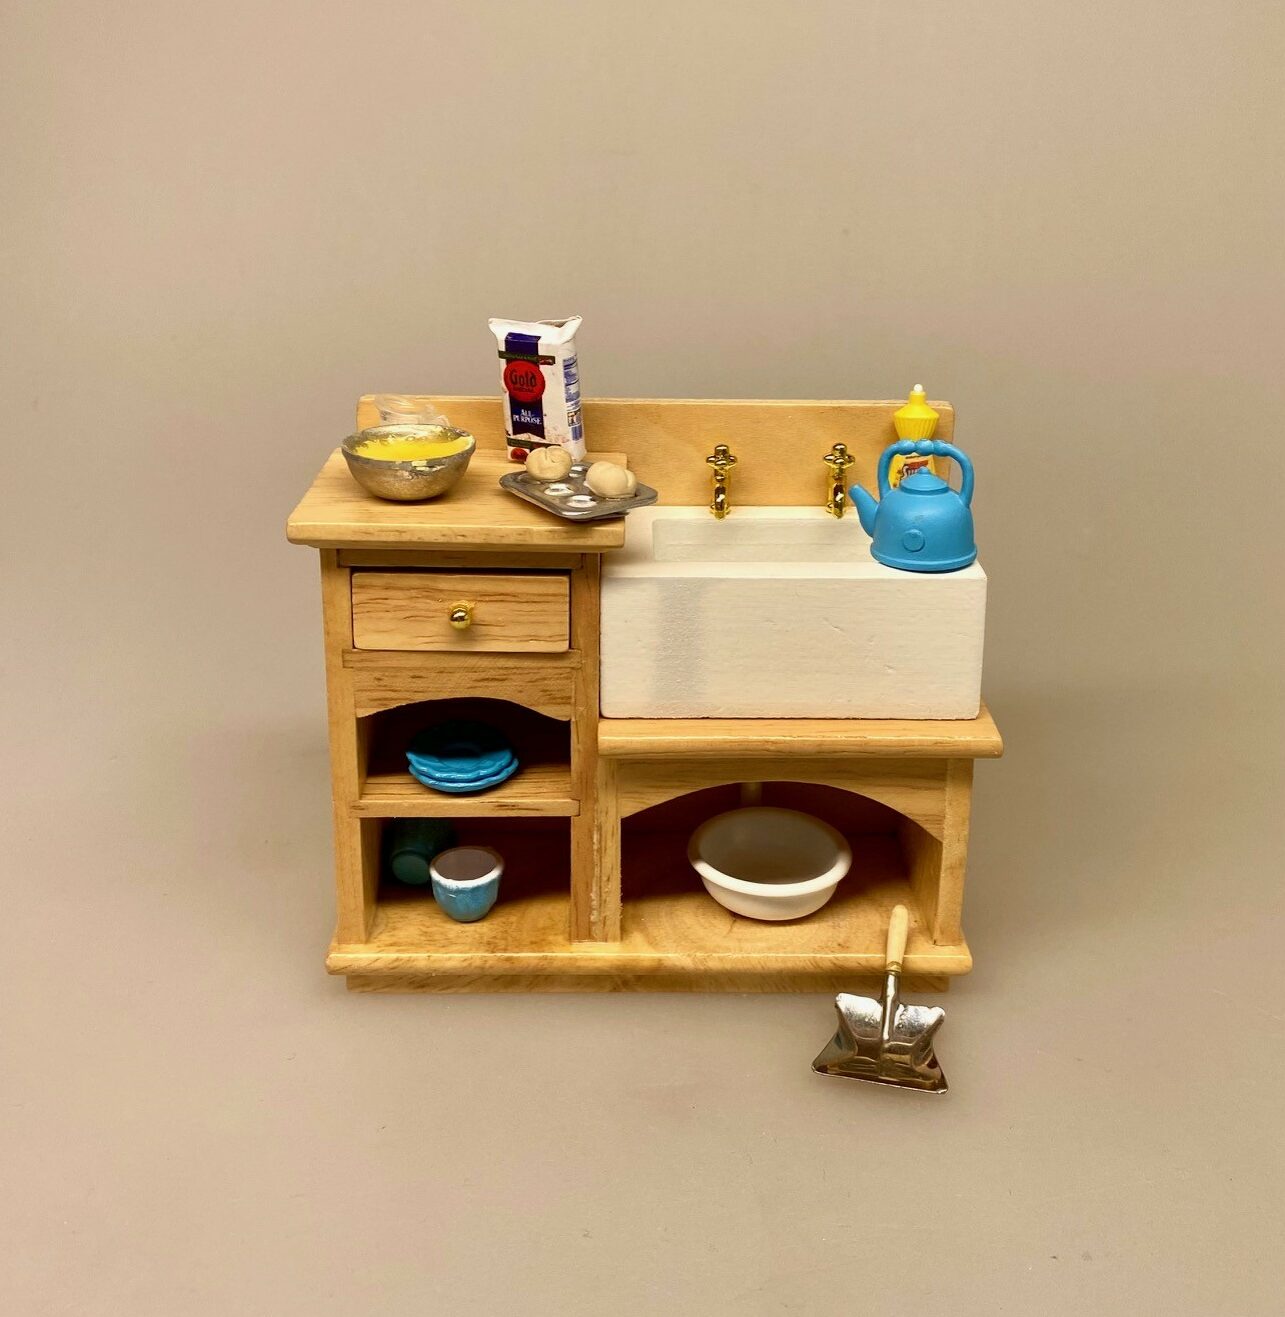 Miniature Køkken Møbel Lille med Vask, Miniature Køkken møbel med vask, køkken , dukkekøkken, køkkenvask, køkkenbord, mini, dukkehusmøbler, dikkehustilbehør, dukkekøkken, 1:12, miniaturer,